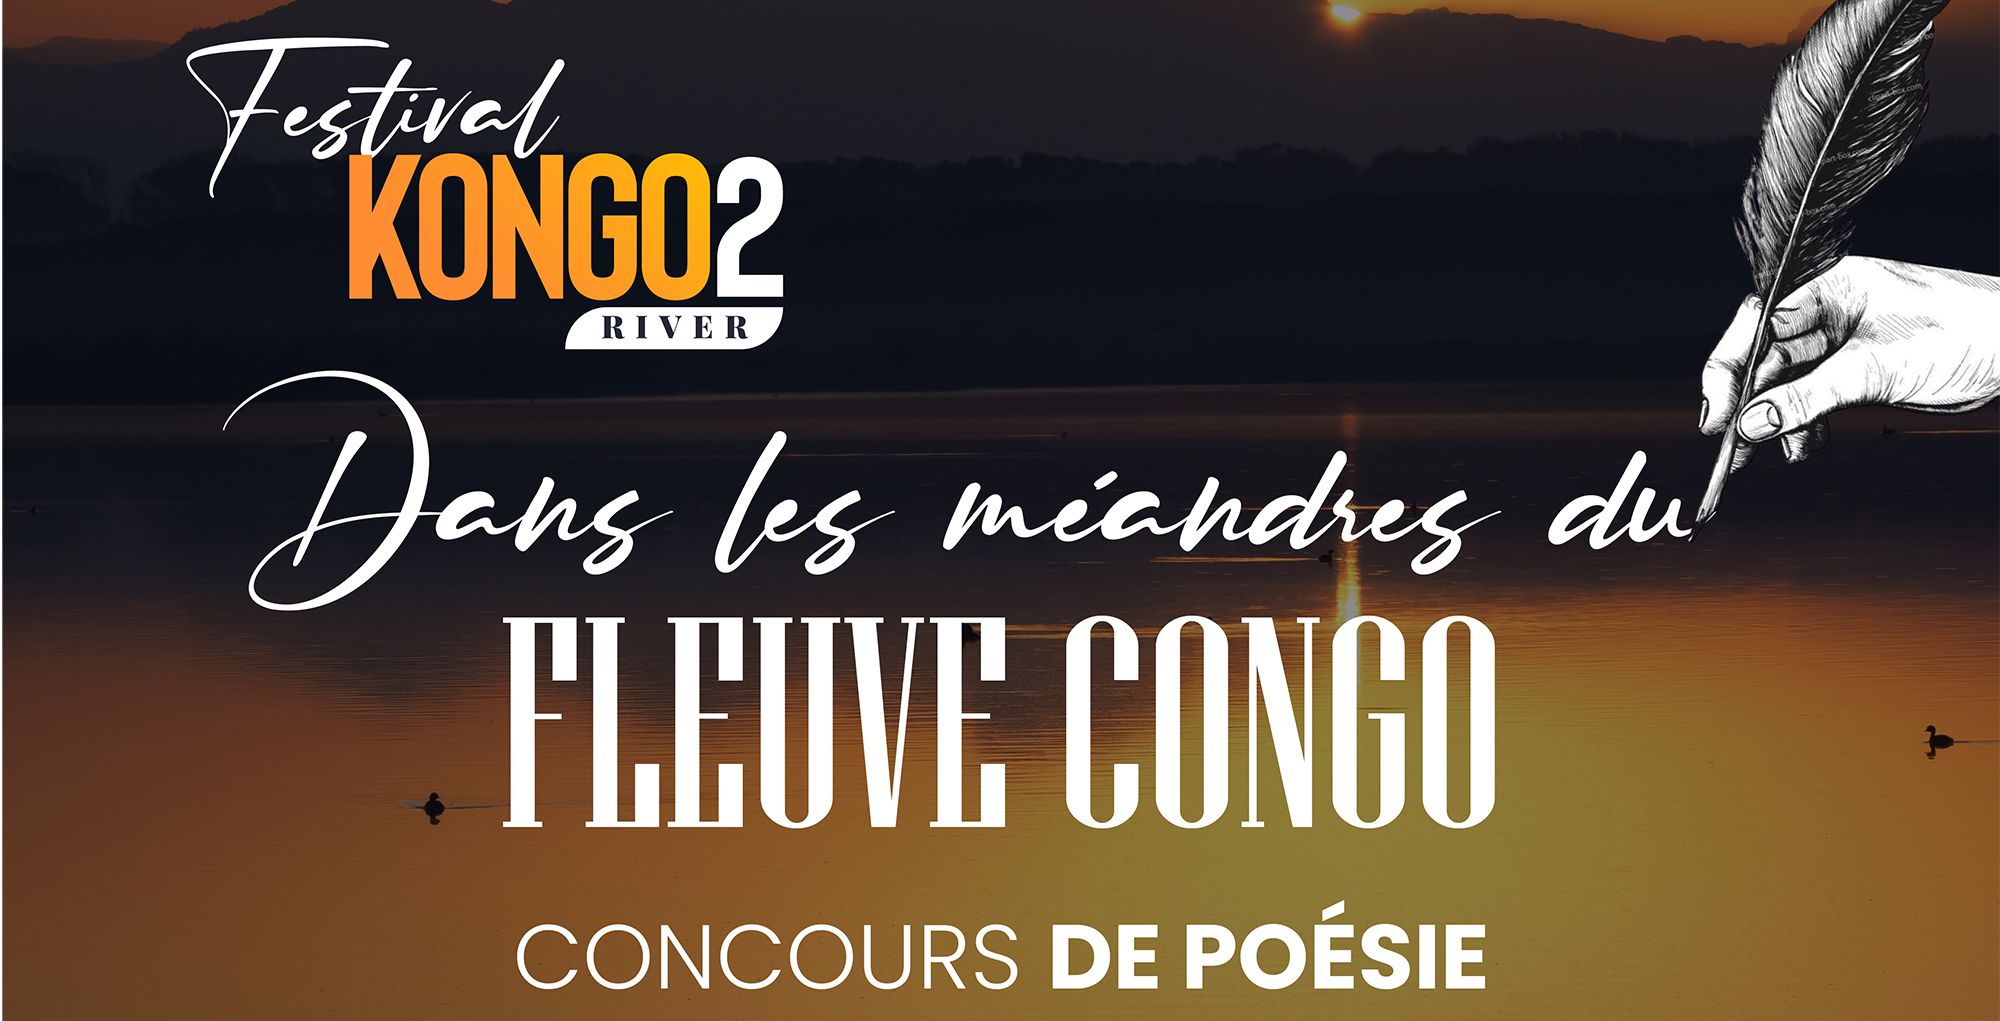 DANS LES MÉANDRES DU FLEUVE CONGO: « RIMES et RYTHMES SUR LE FLEUVE CONGO  